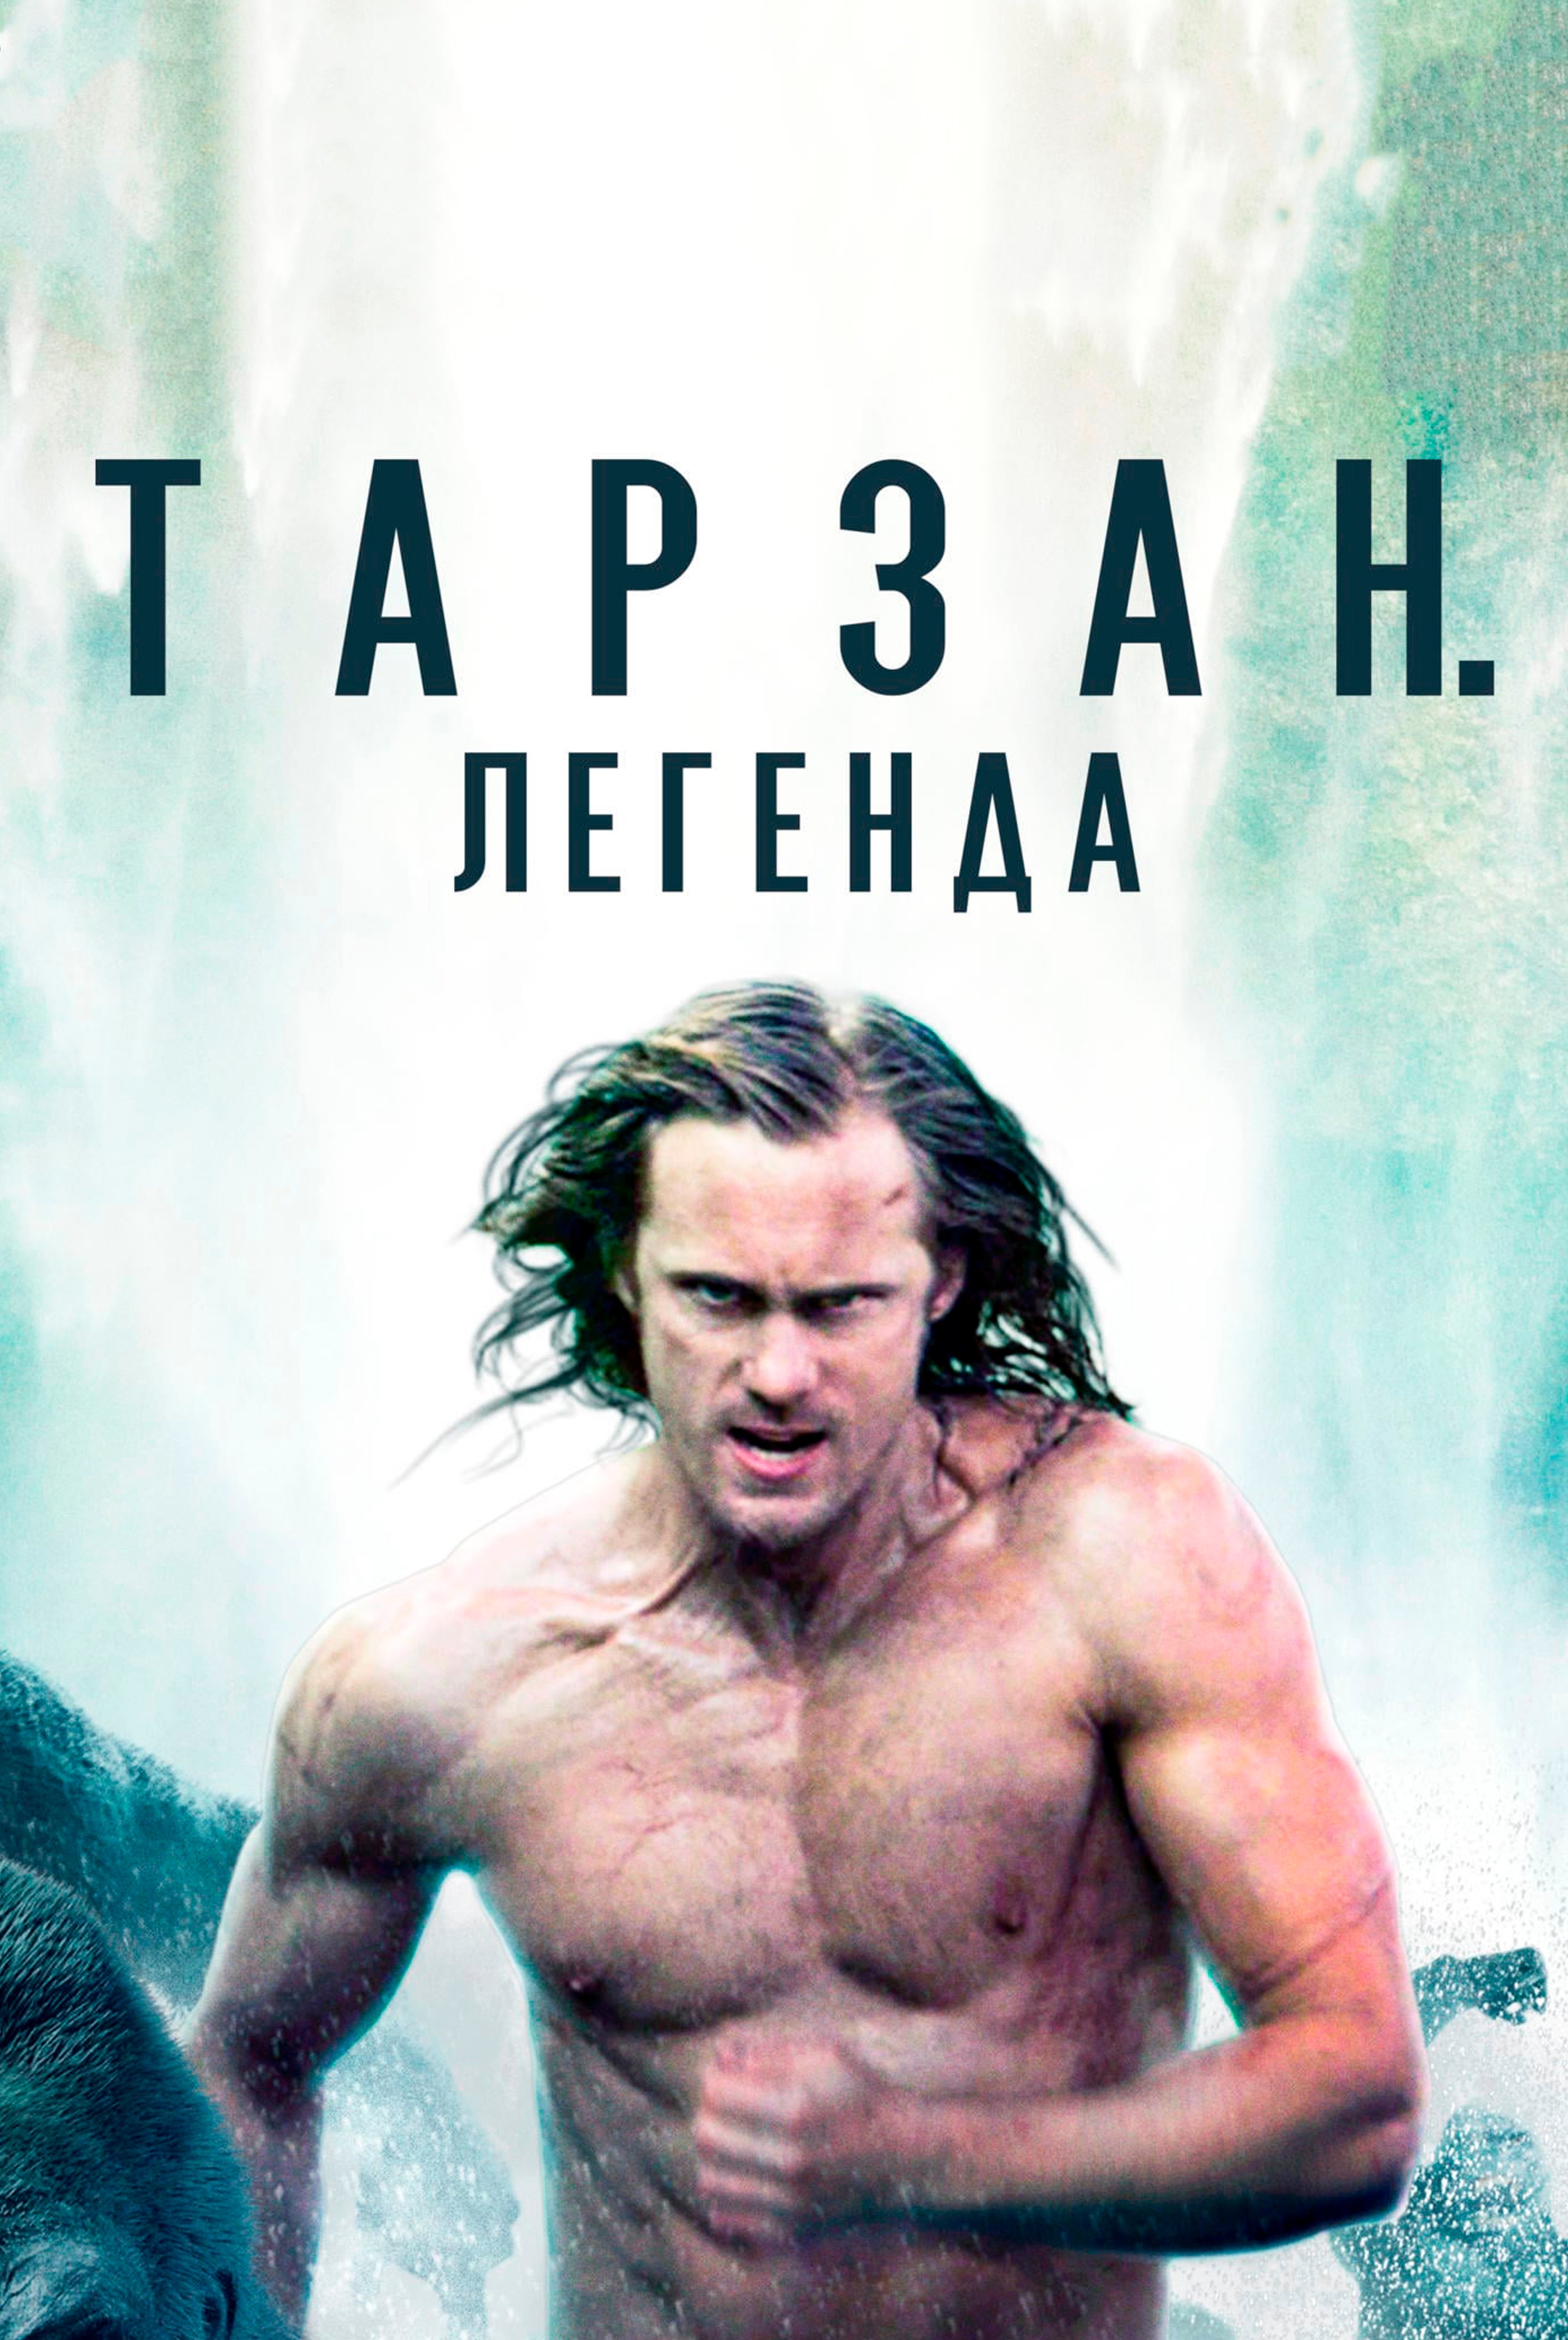 Tarzan en Blu Ray : Tarzan [4K Ultra-HD + Blu-ray + Copie Digitale UltraViolet] [4K Ultra-HD ...